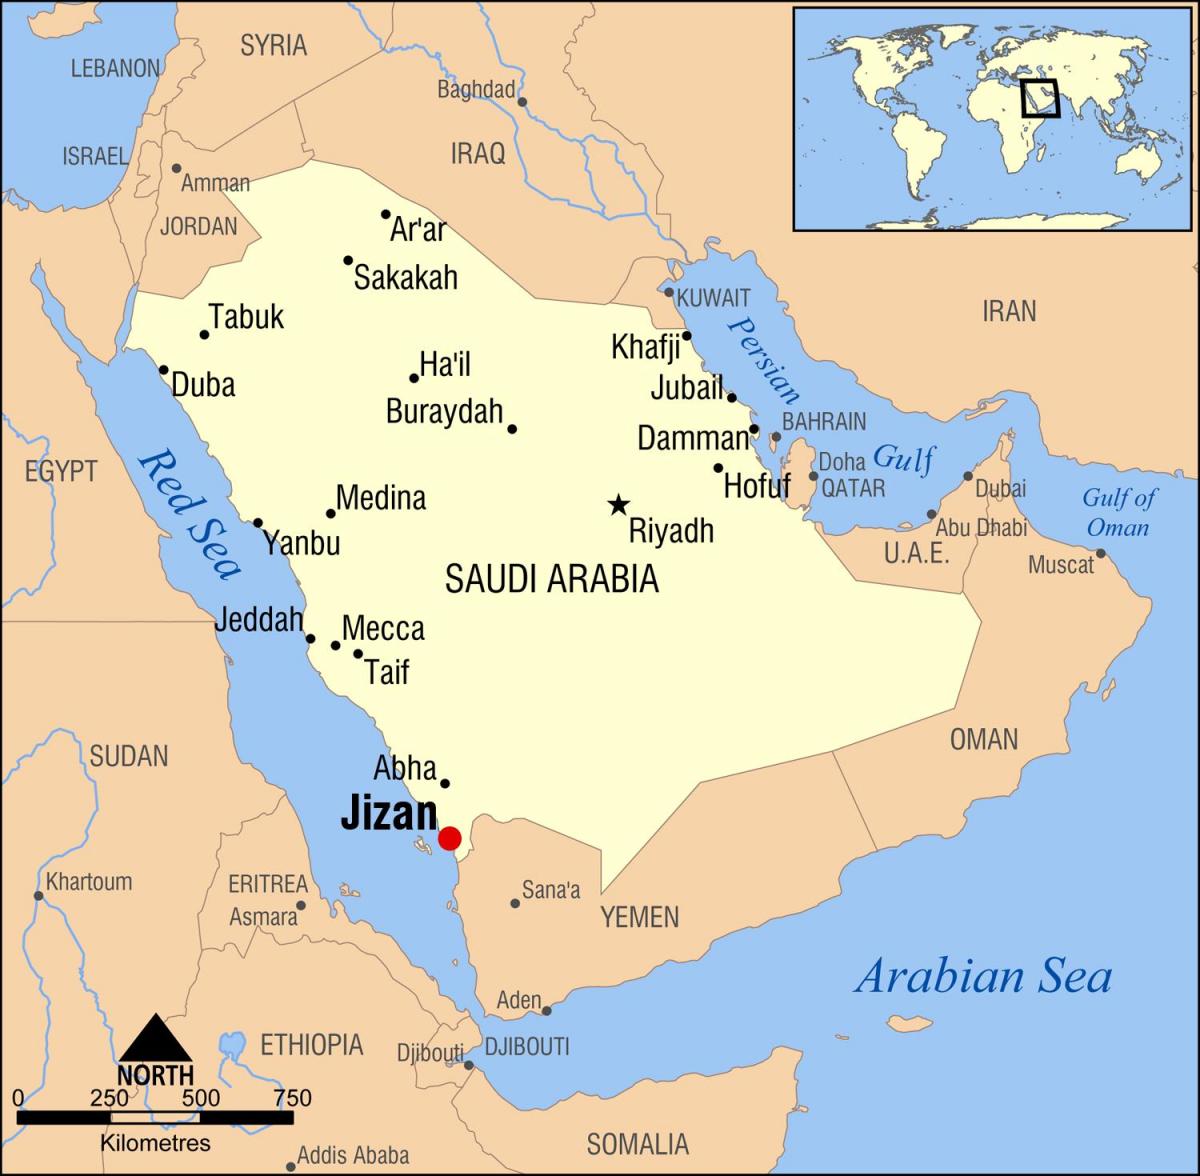 jizan KSA map